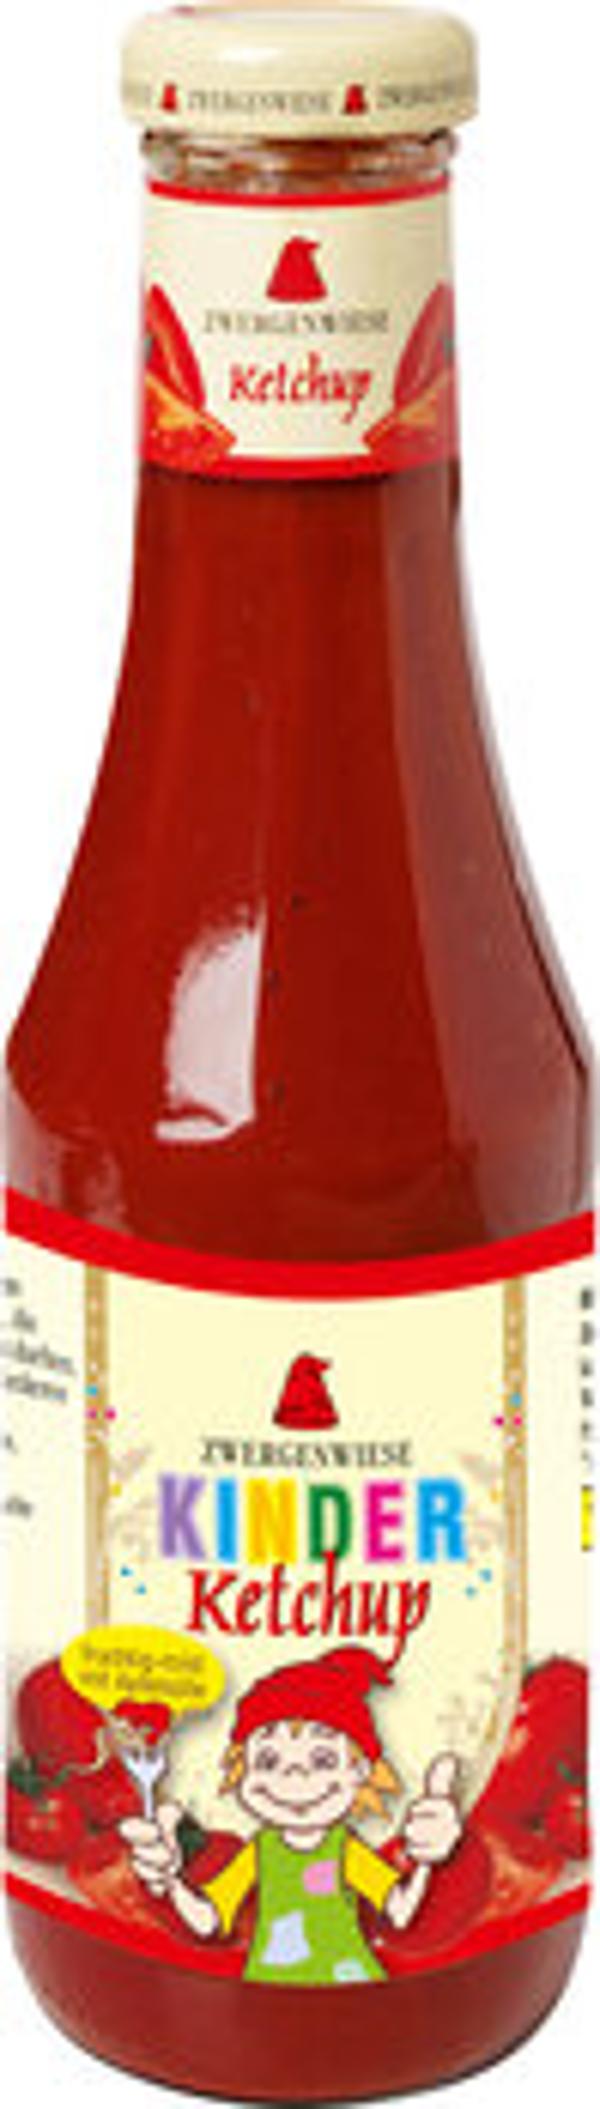 Produktfoto zu Zwergenwiese Kinder-Ketchup 500ml